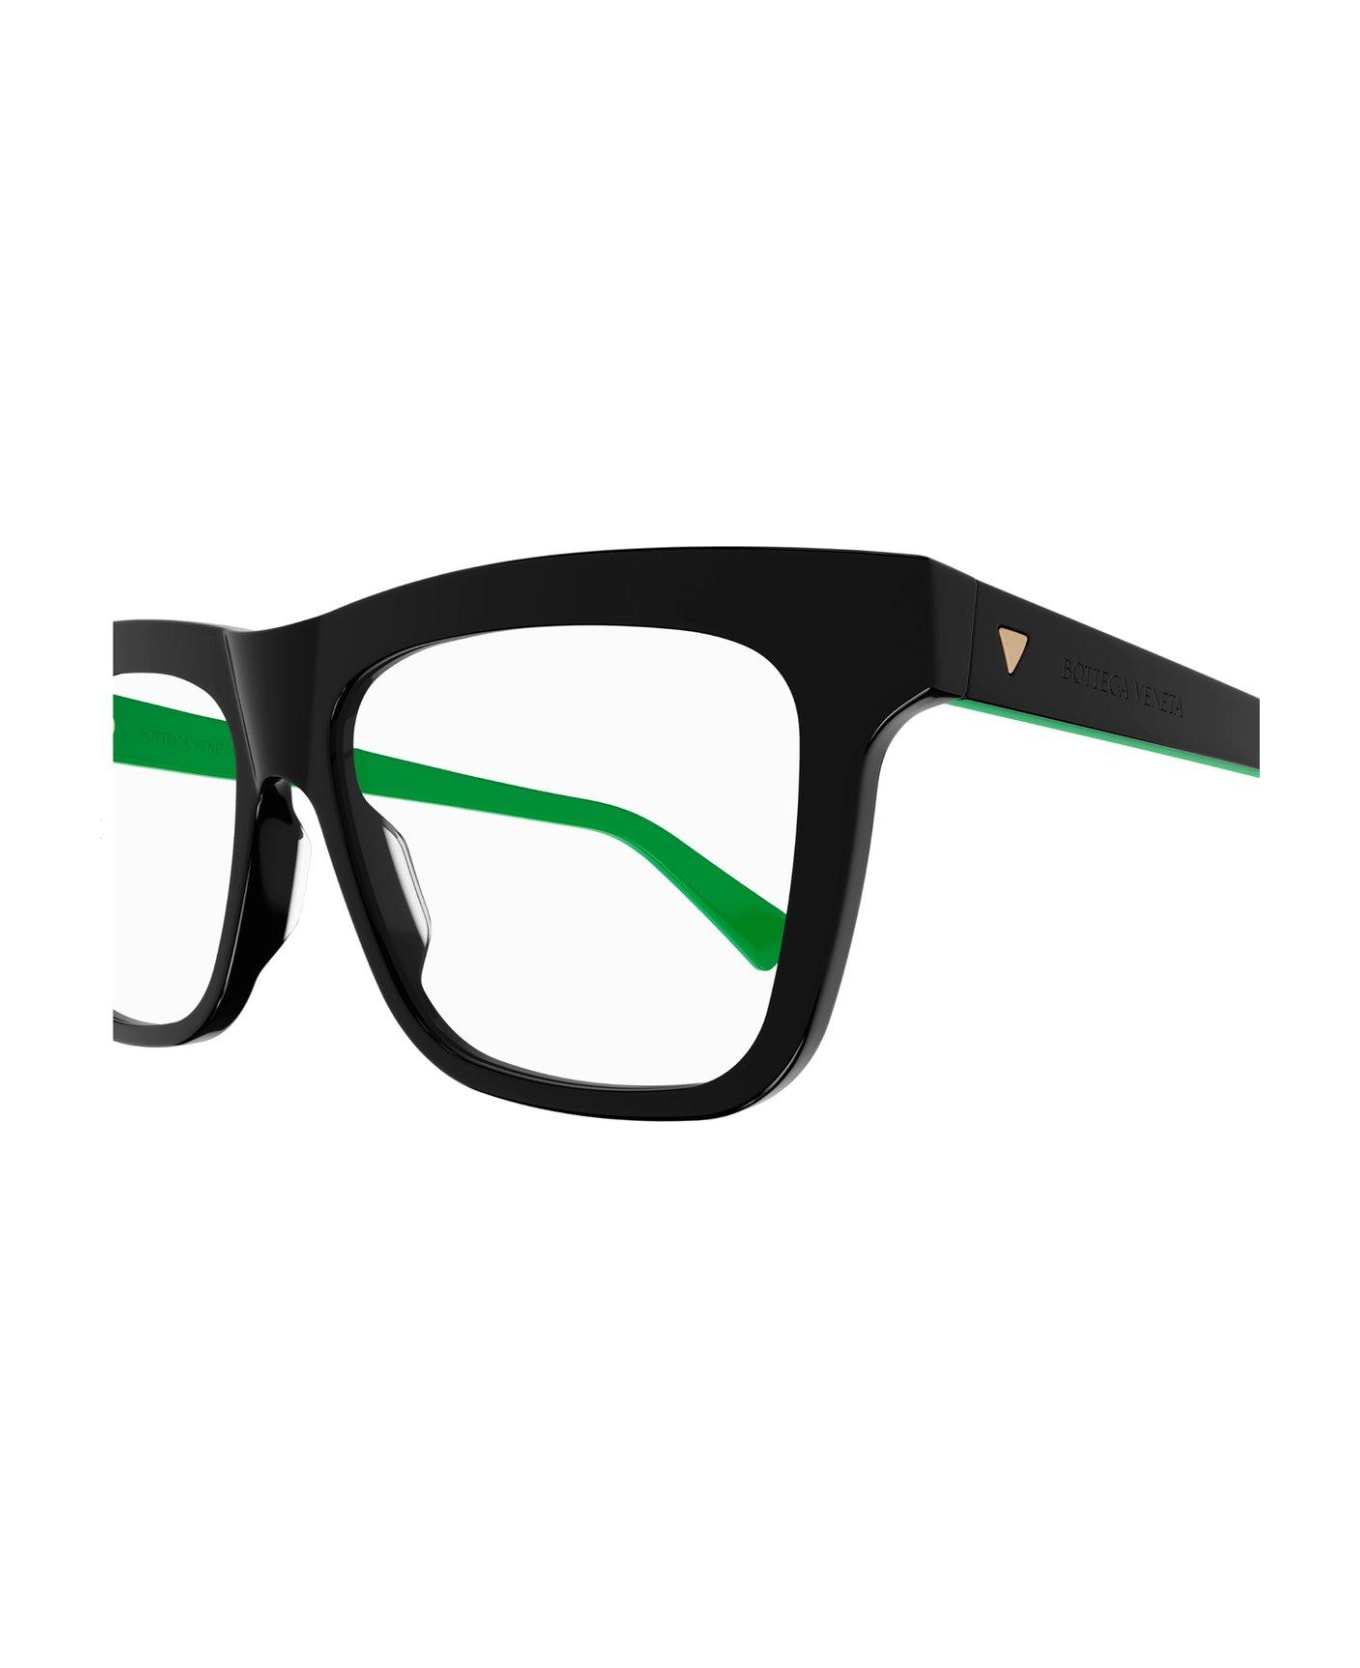 Bottega Veneta Eyewear Square-frame Glasses - 005 black black transpare